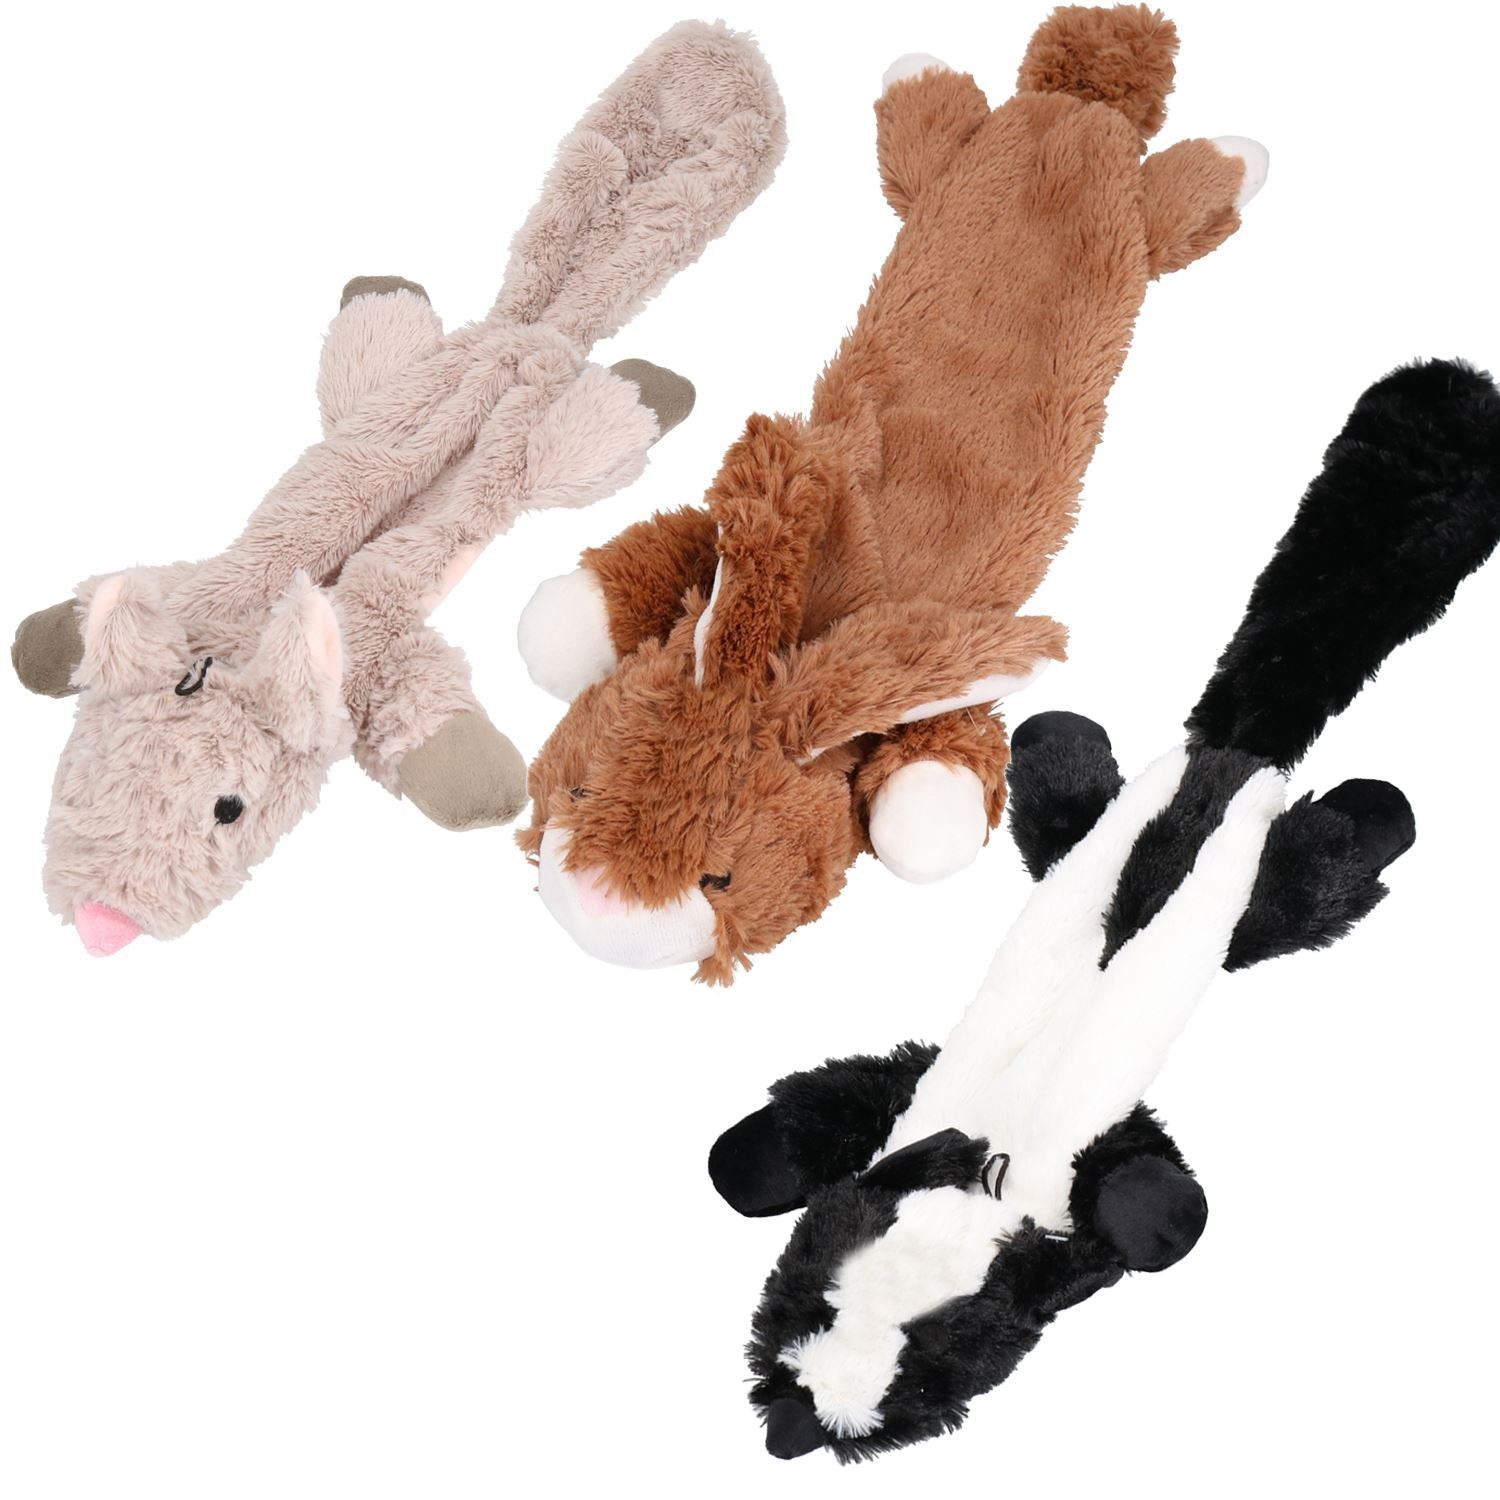 Set of 3 Plush Soft Unstuffed Chipmunk, Skunk & Rabbit Dog Toy With Squeak